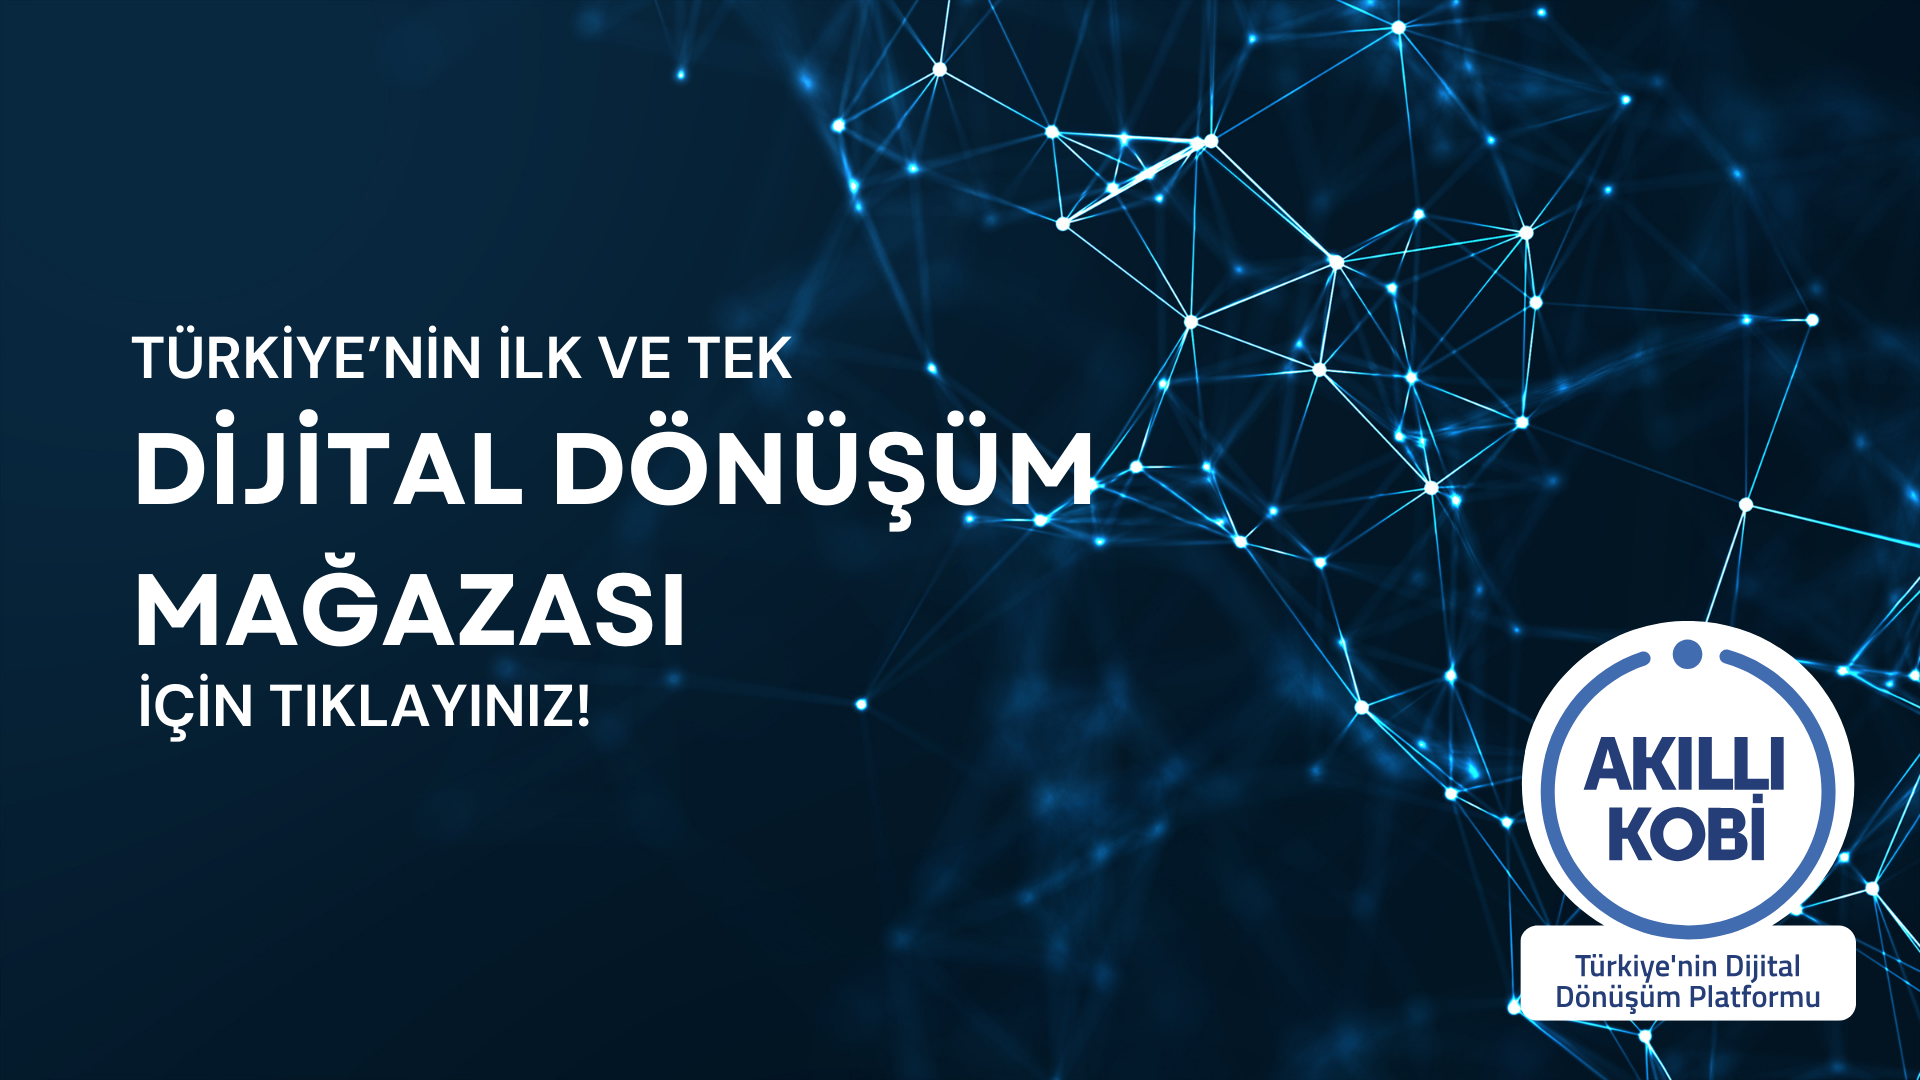 Türkiye'nin ilk ve tek Dijital Dönüşüm Mağazası için